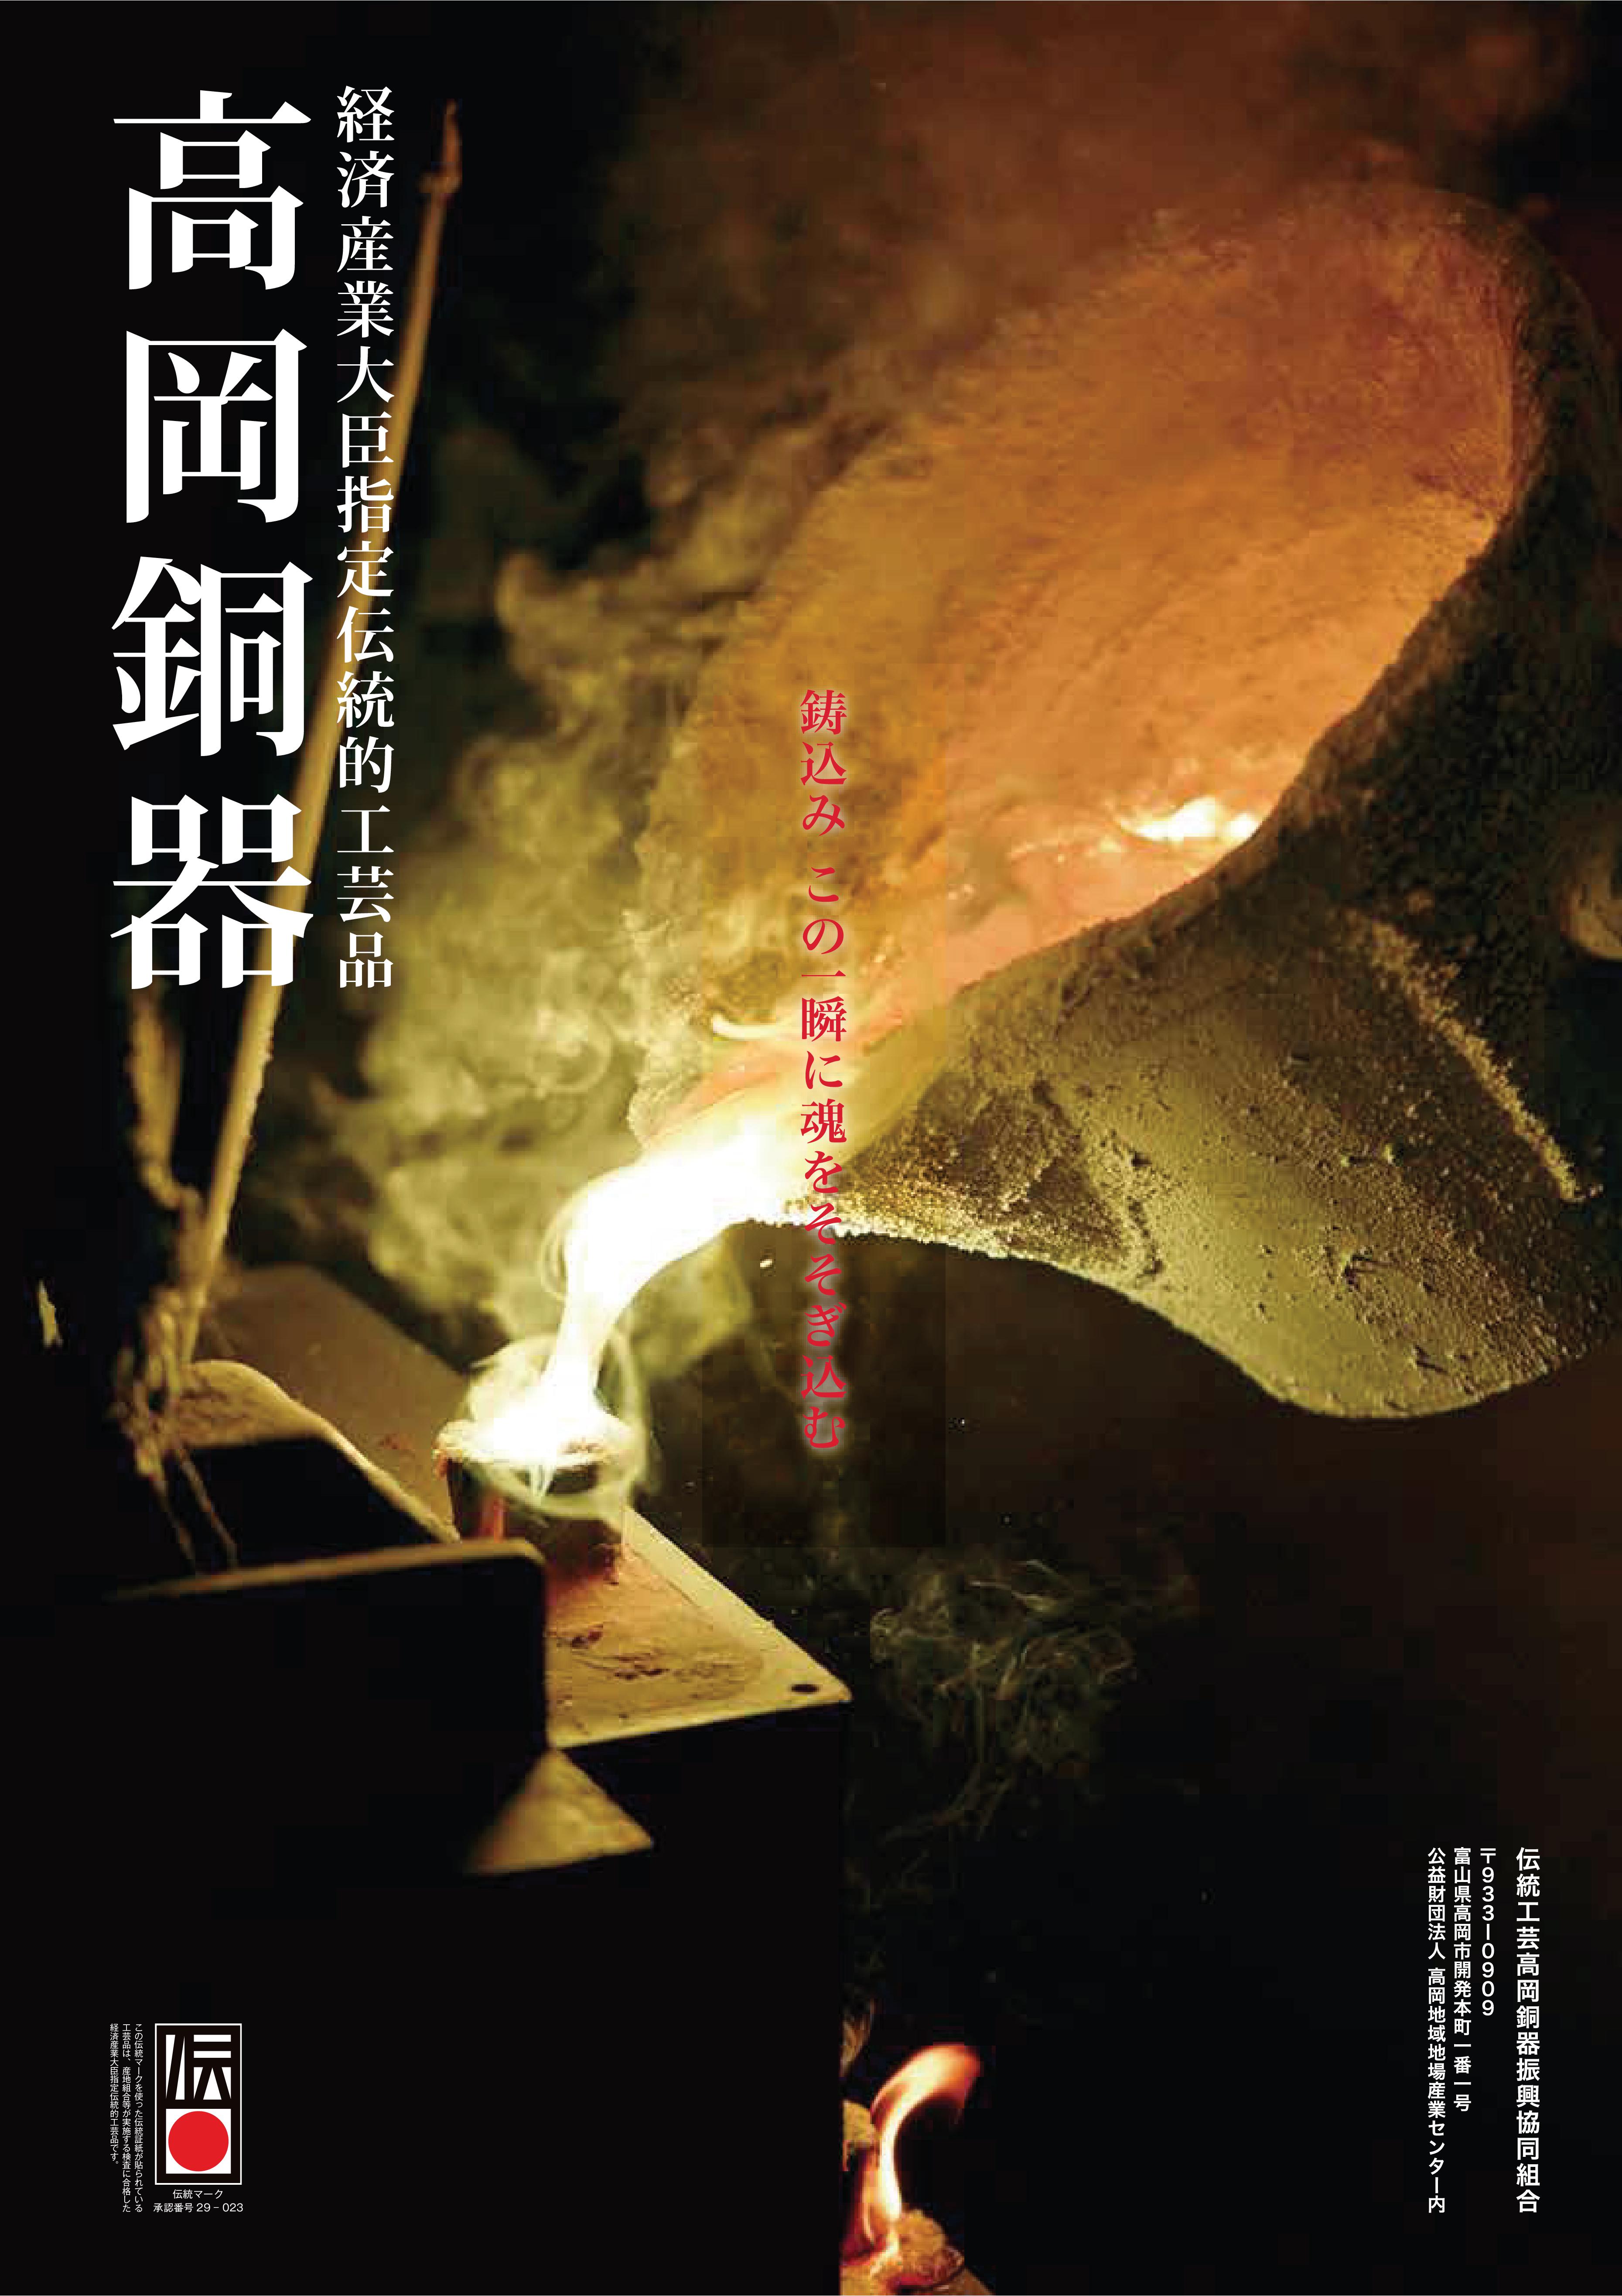 Takaoka imagem de promoção copperware cooperativas 1 ofícios tradicionais